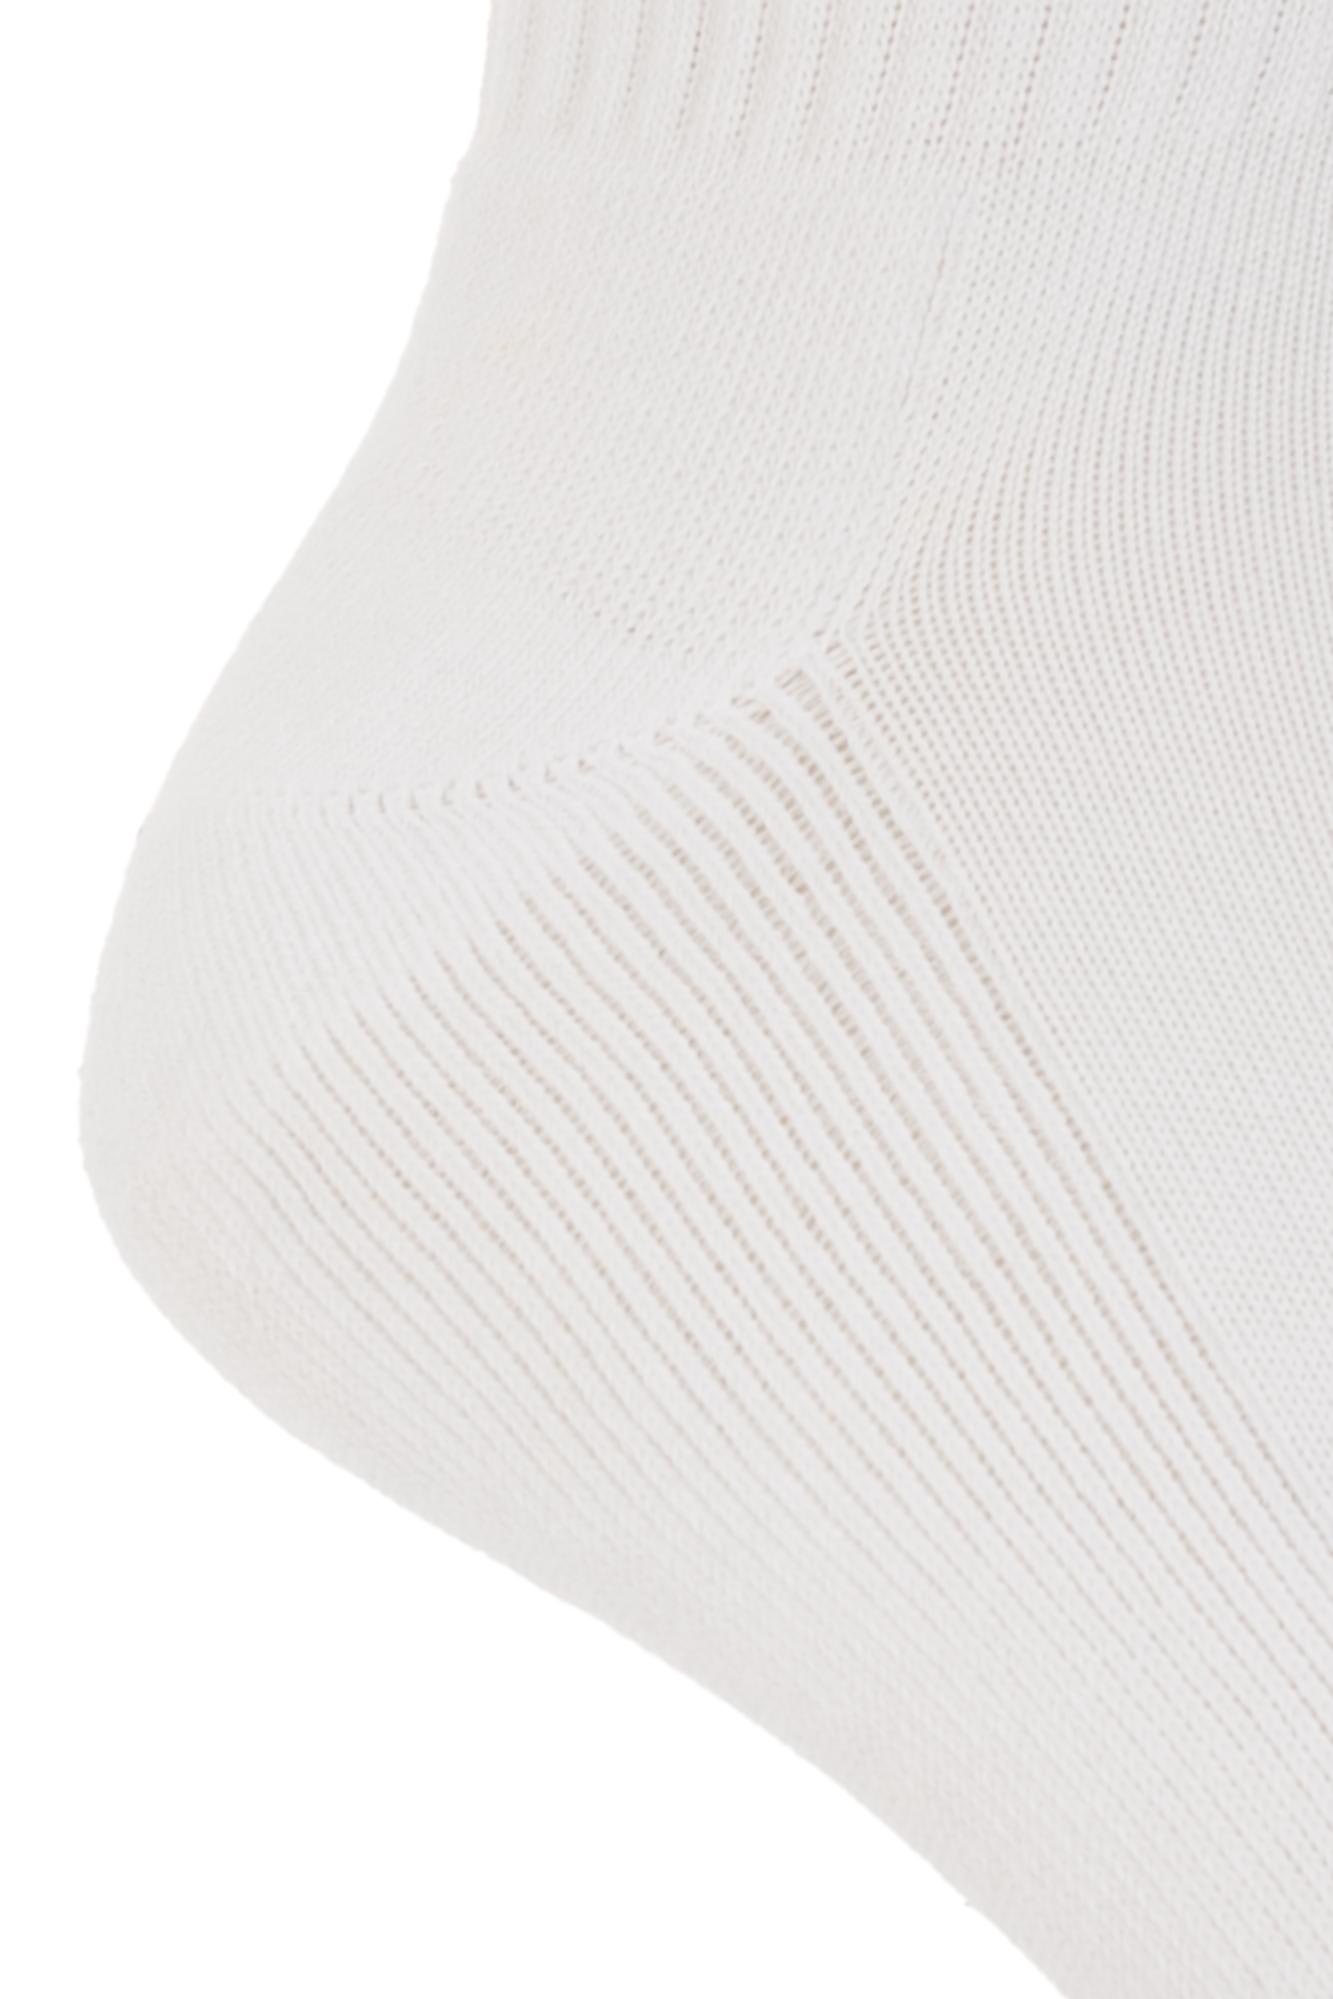 Shop Balenciaga Branded Socks In White